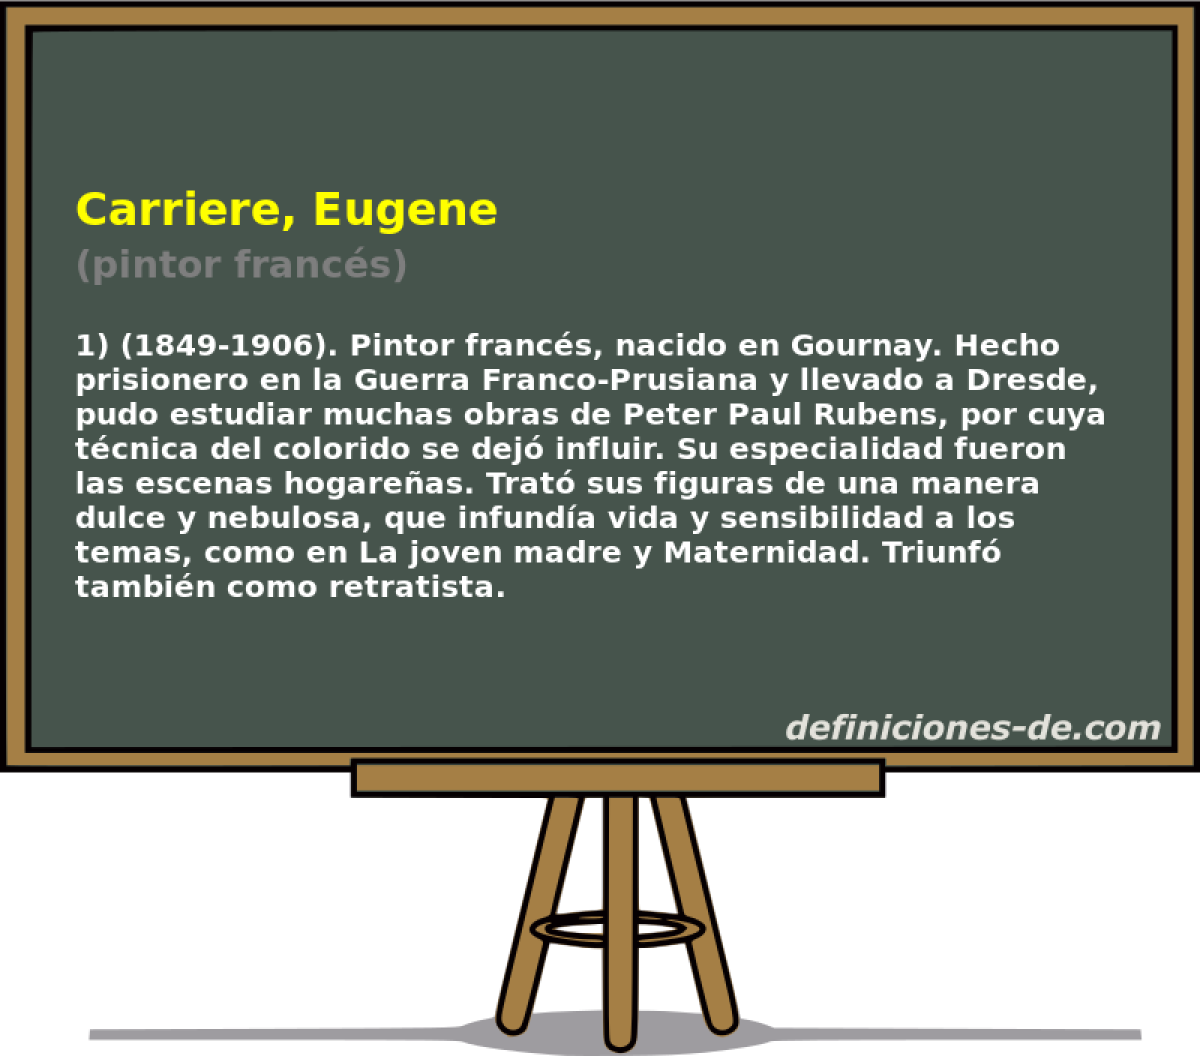 Carriere, Eugene (pintor francs)